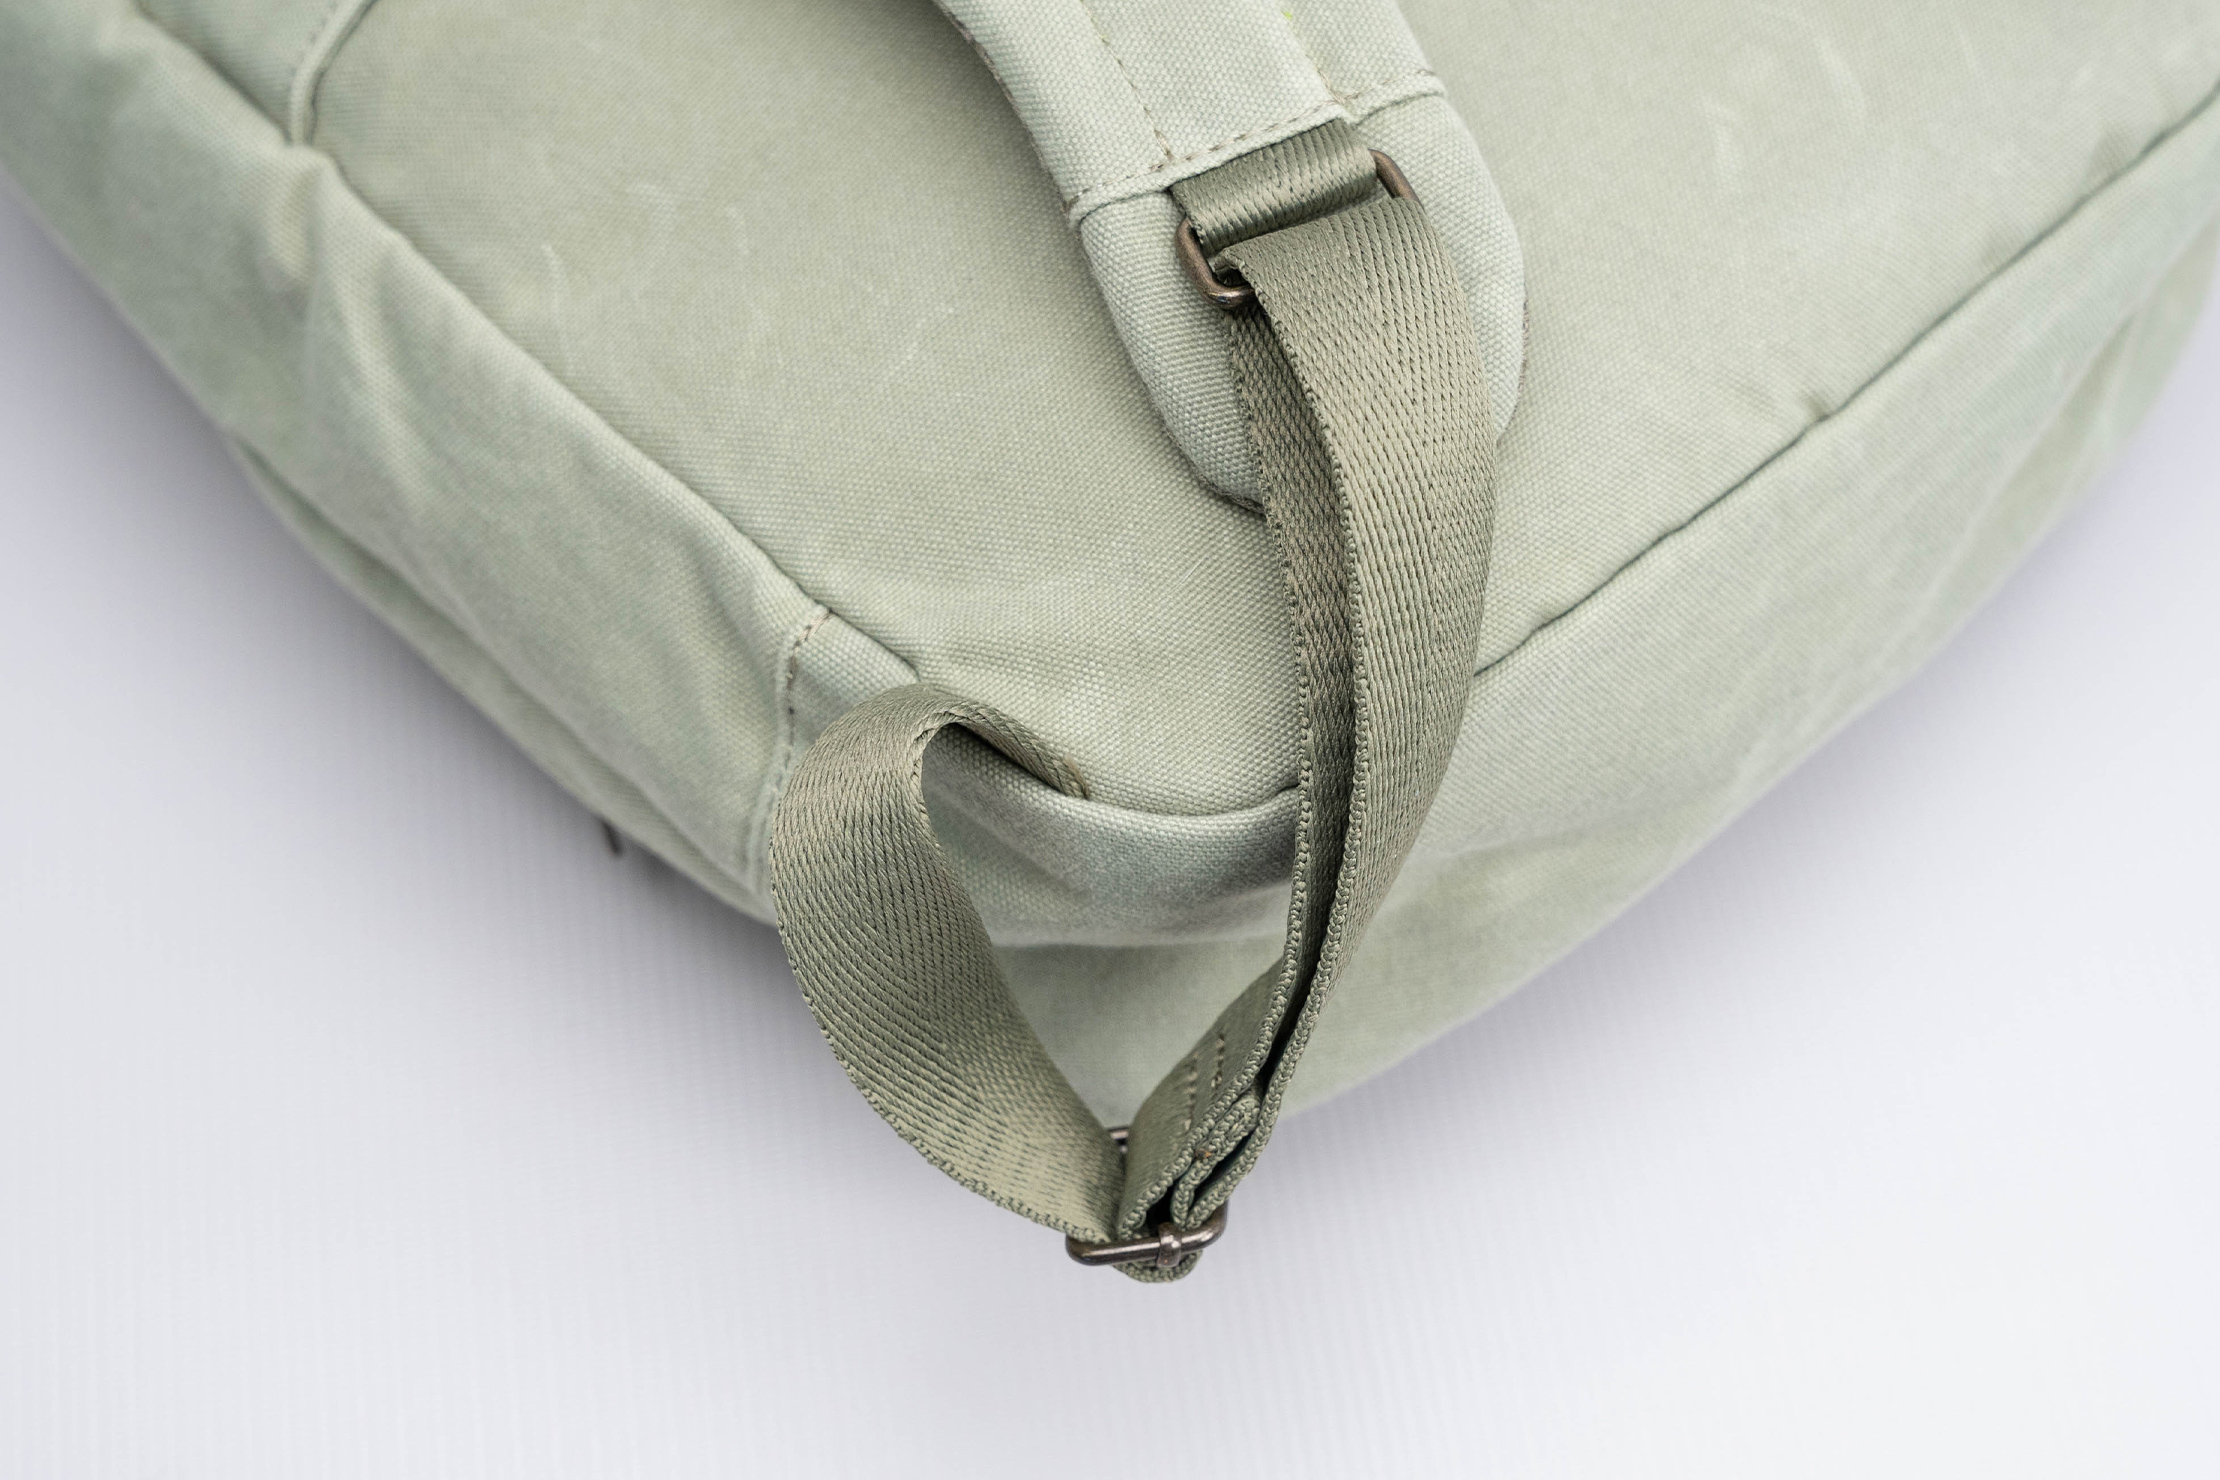 Day Owl Slim Backpack Adjuster Strap